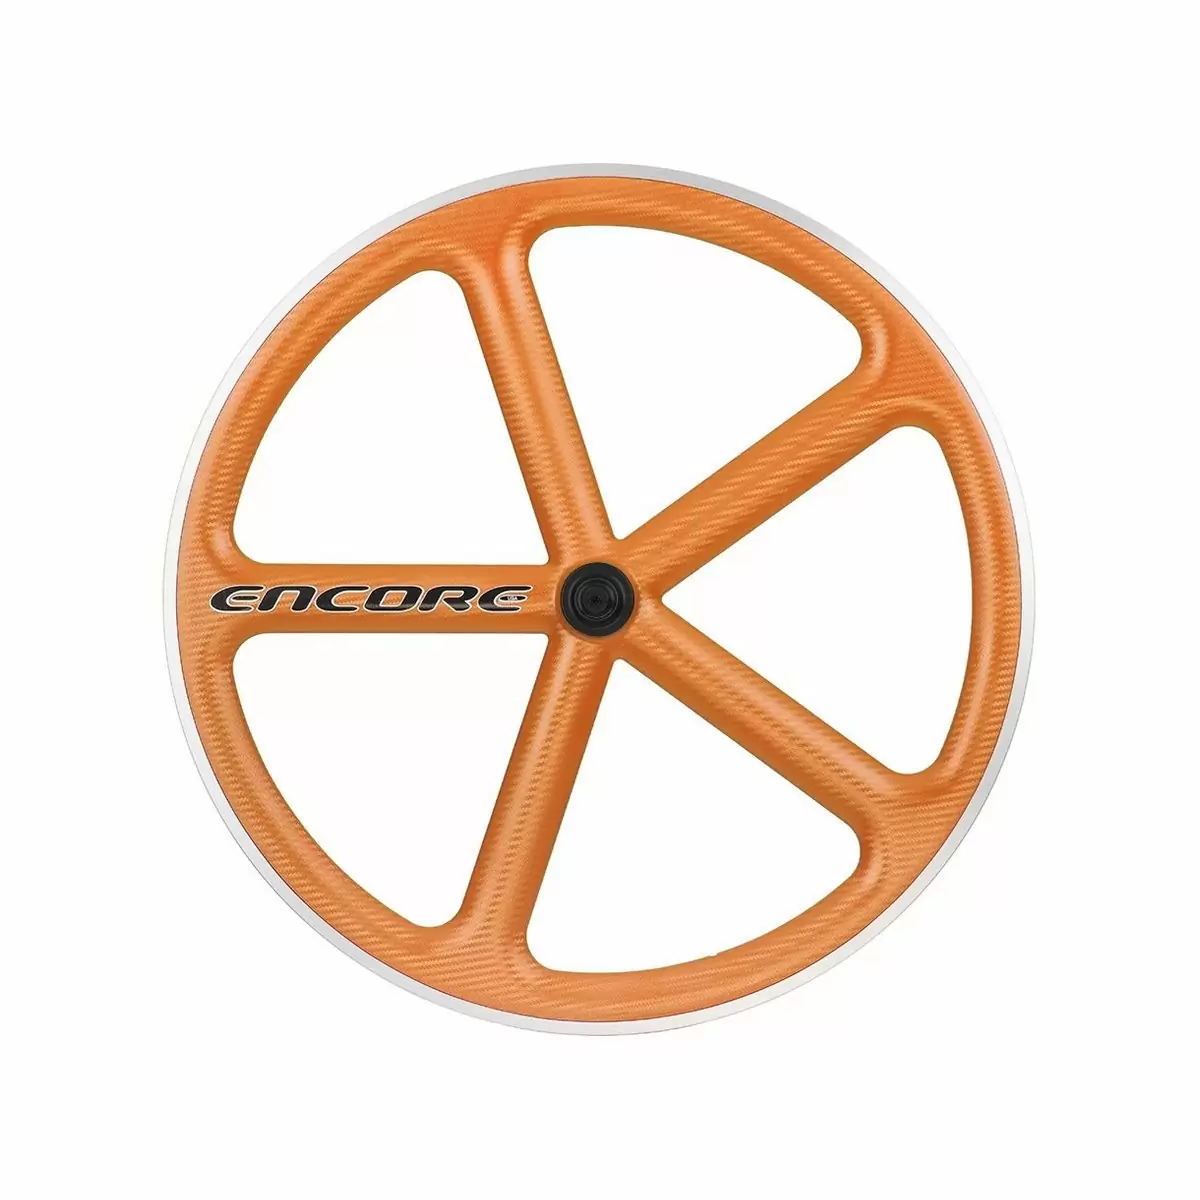 Vorderrad 700c Track 5 Speichen Carbon Geflecht orange msw - image